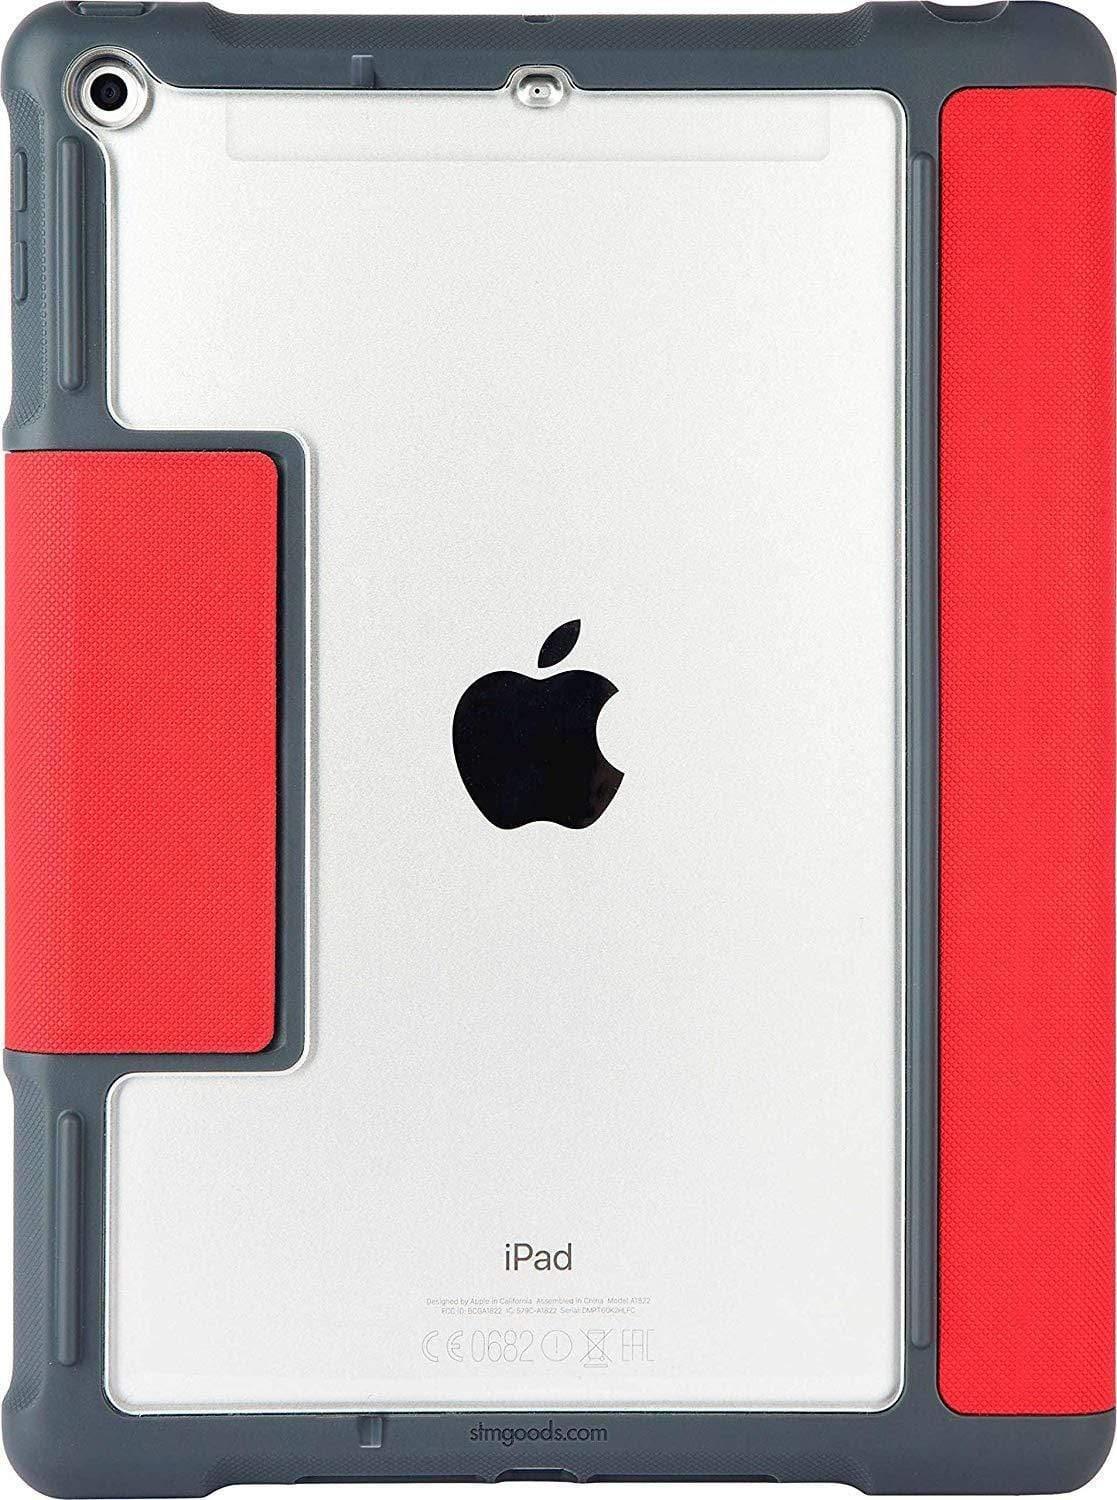 كفر ايباد 9.7 - أحمر ورمادي STM Dux Plus Rugged Case 2017 Red - For iPad 9.7